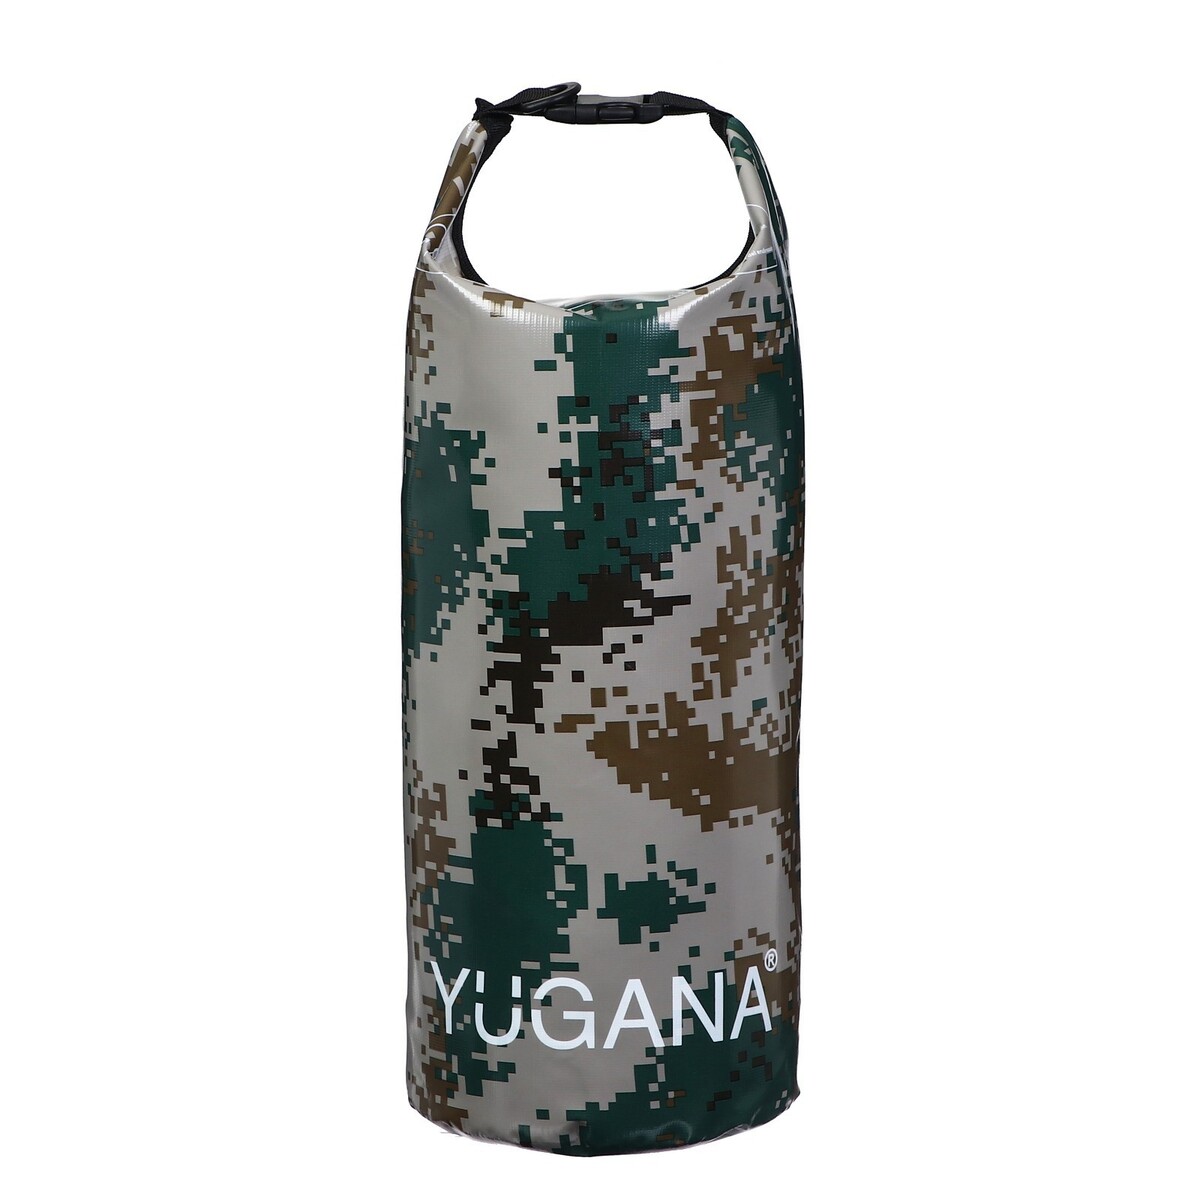 фото Гермомешок yugana, пвх, водонепроницаемый 20 литров, один ремень, камуфляж